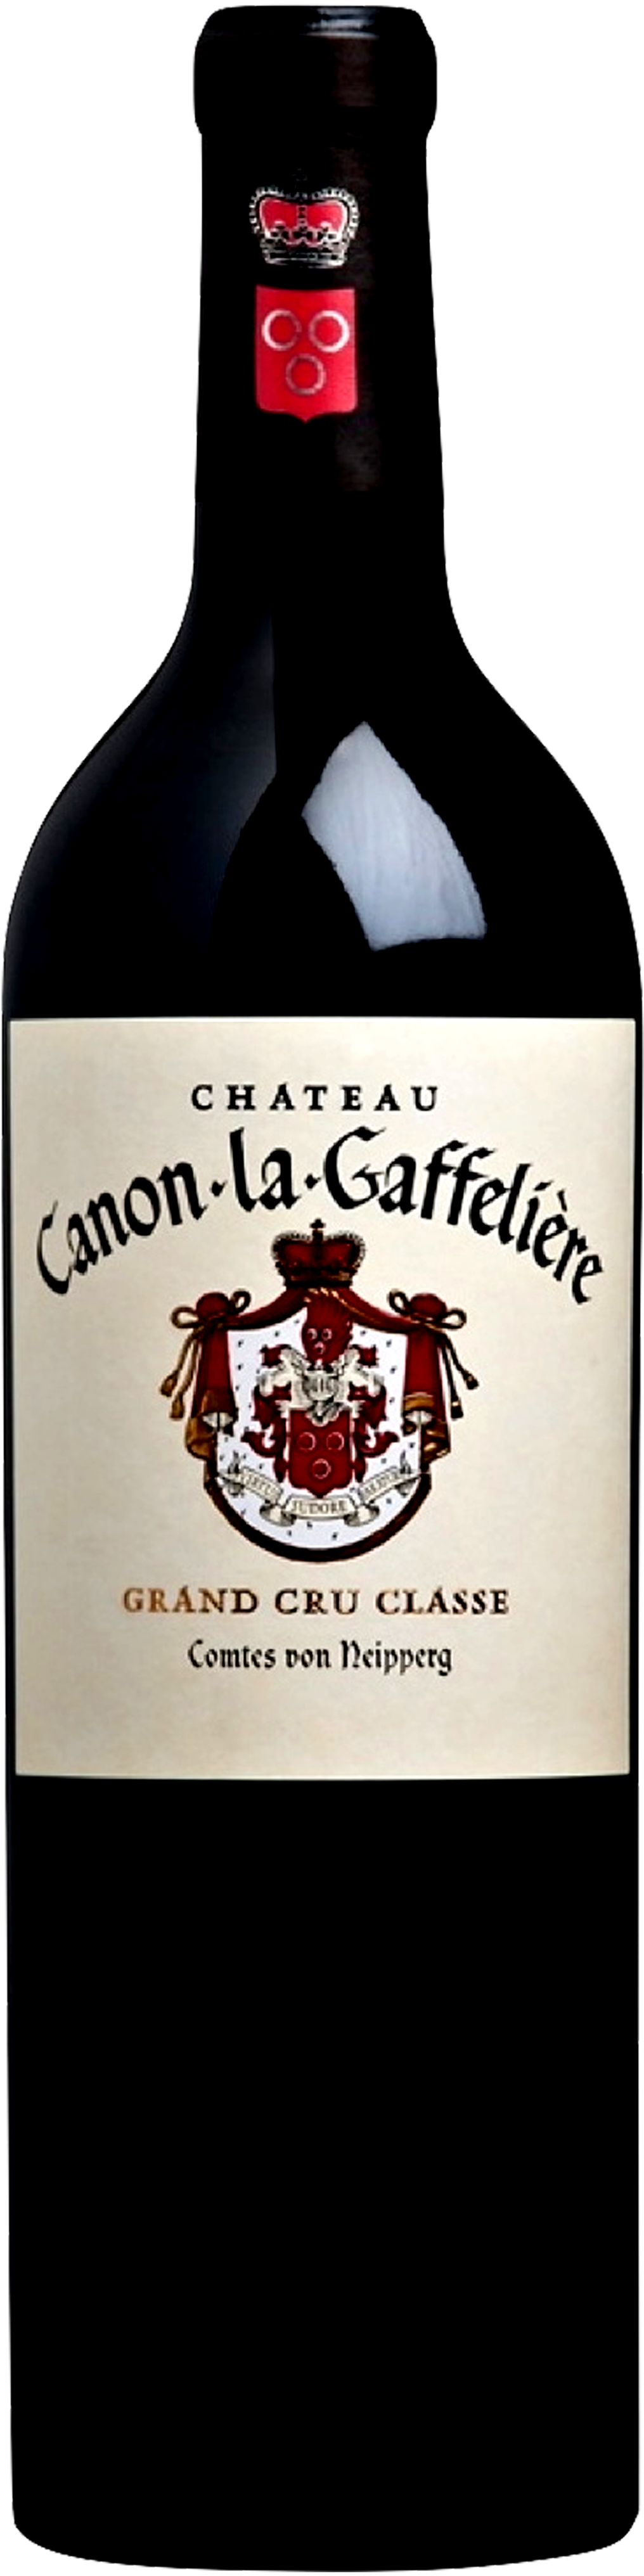 Image of product Château Canon La Gaffelière, GCC St Emilion